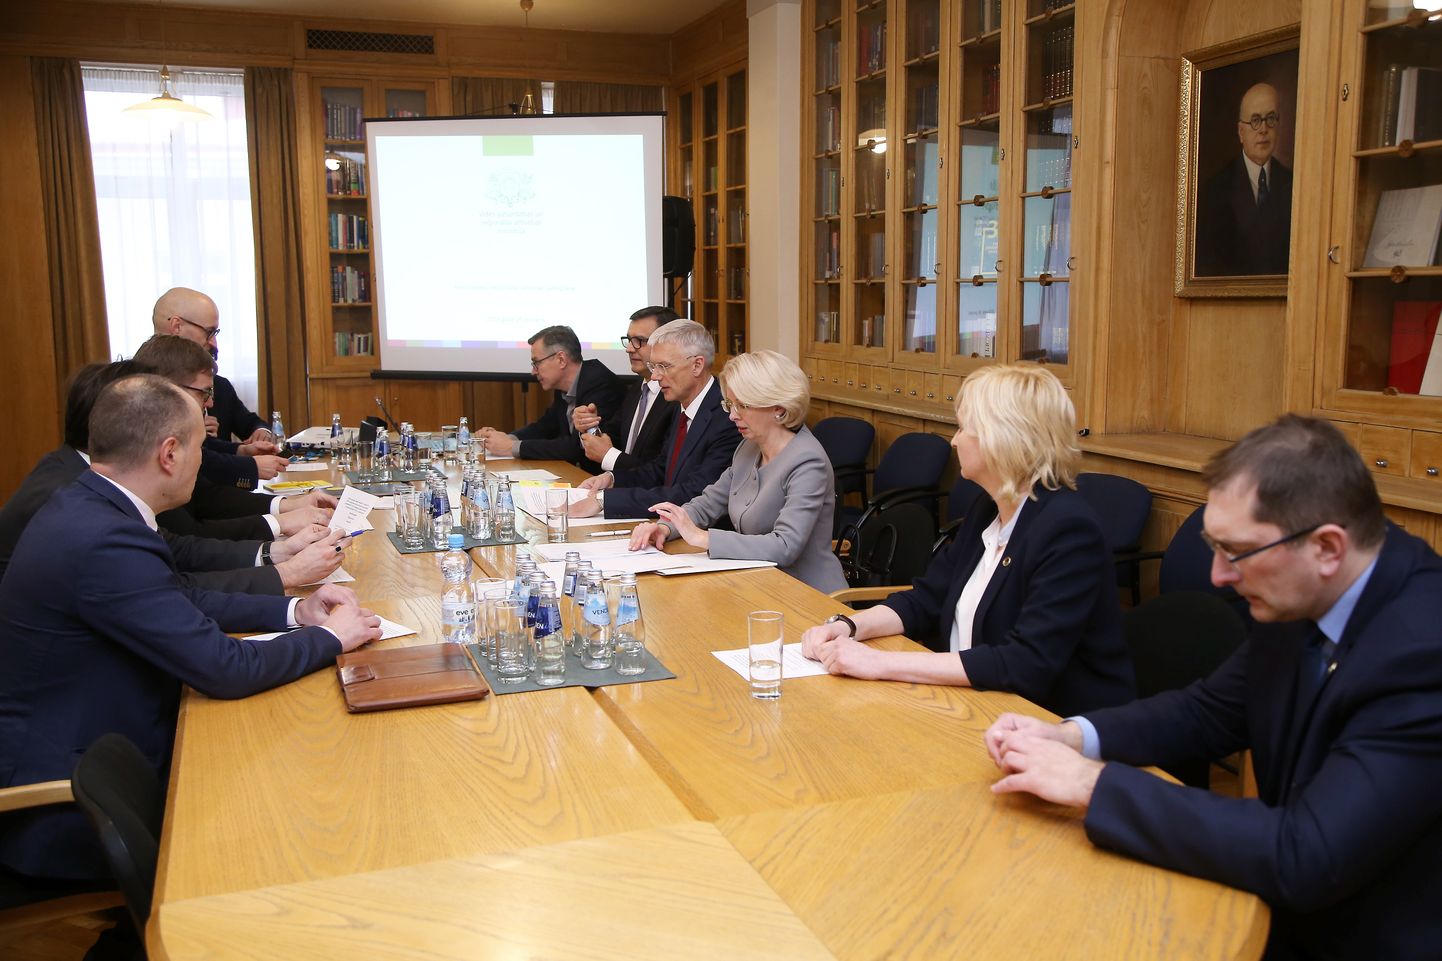 Satiksmes ministrs Tālis Linkaits (no labās), Jaunās konservatīvās partijas valdes locekle Juta Strīķe, Saeimas priekšsēdētāja Ināra Mūrniece, Ministru prezidents Krišjānis Kariņš, finanšu ministrs Jānis Reirs un "Jaunās Vienotības" Saeimas frakcijas priekšsēdētājs Ainars Latkovskis piedalās pirmajā Sadarbības sanāksmes sēdē Ministru kabinetā.